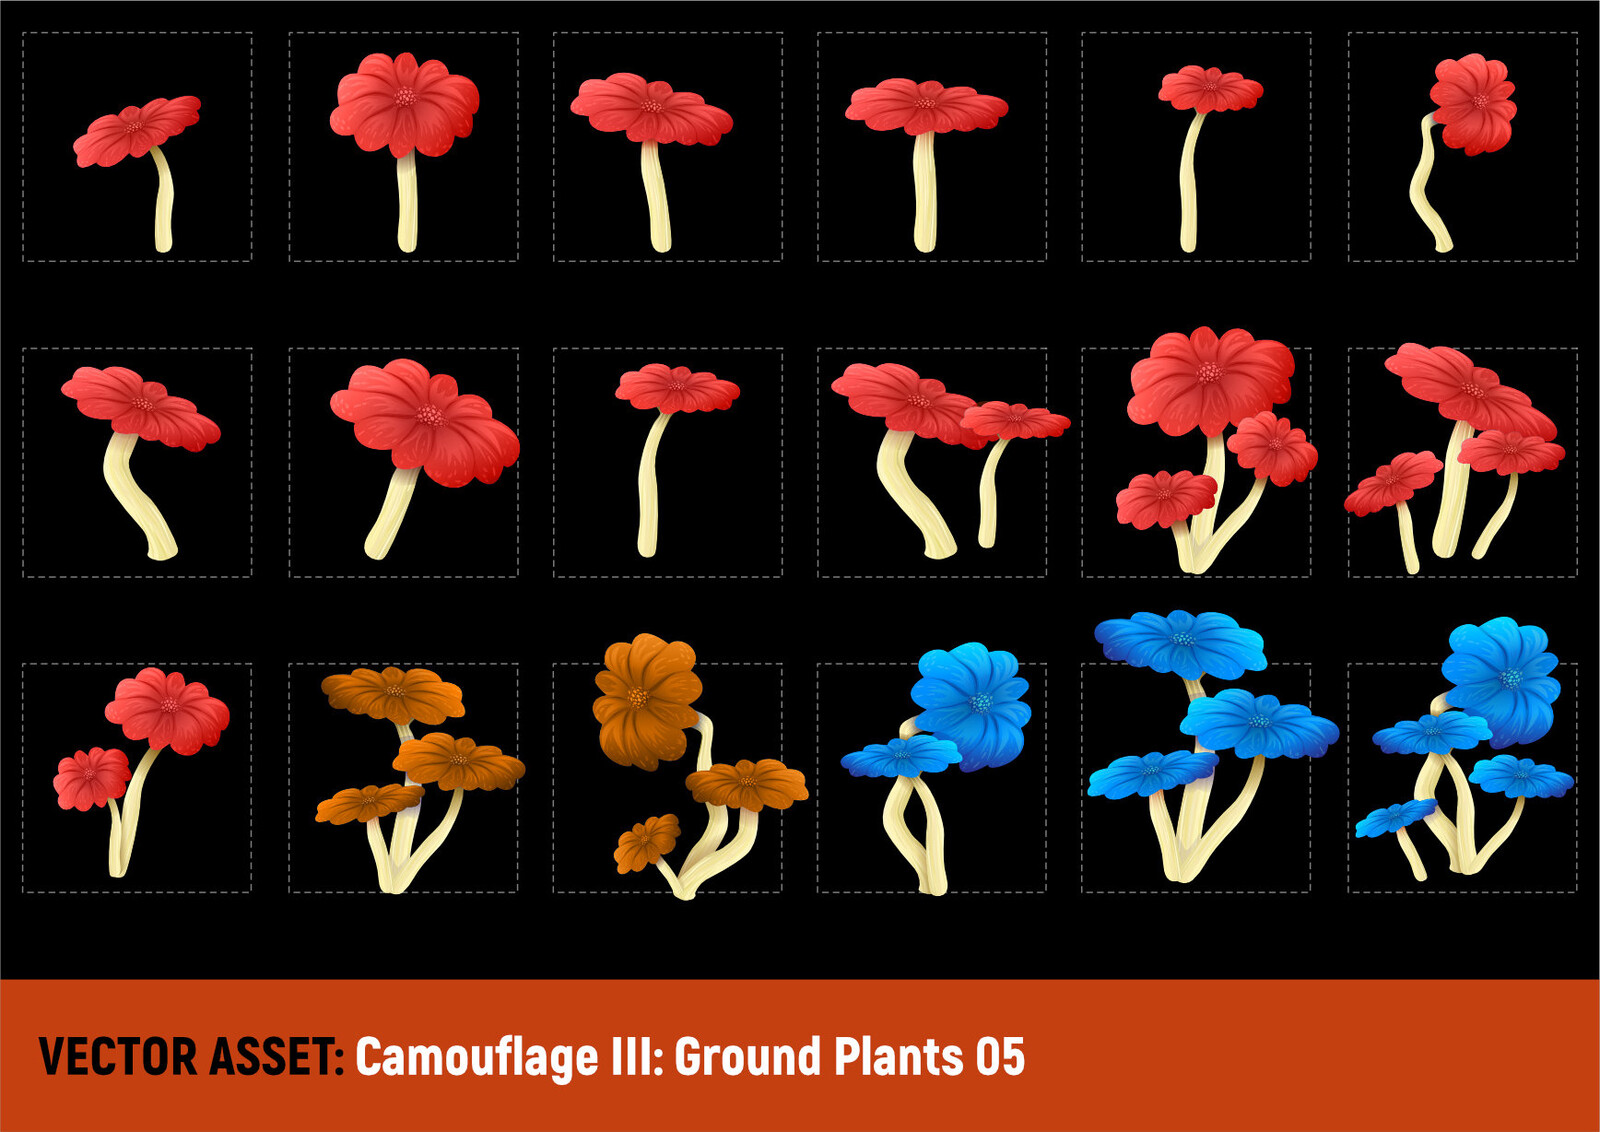 Camouflage III: Ground Plants 05